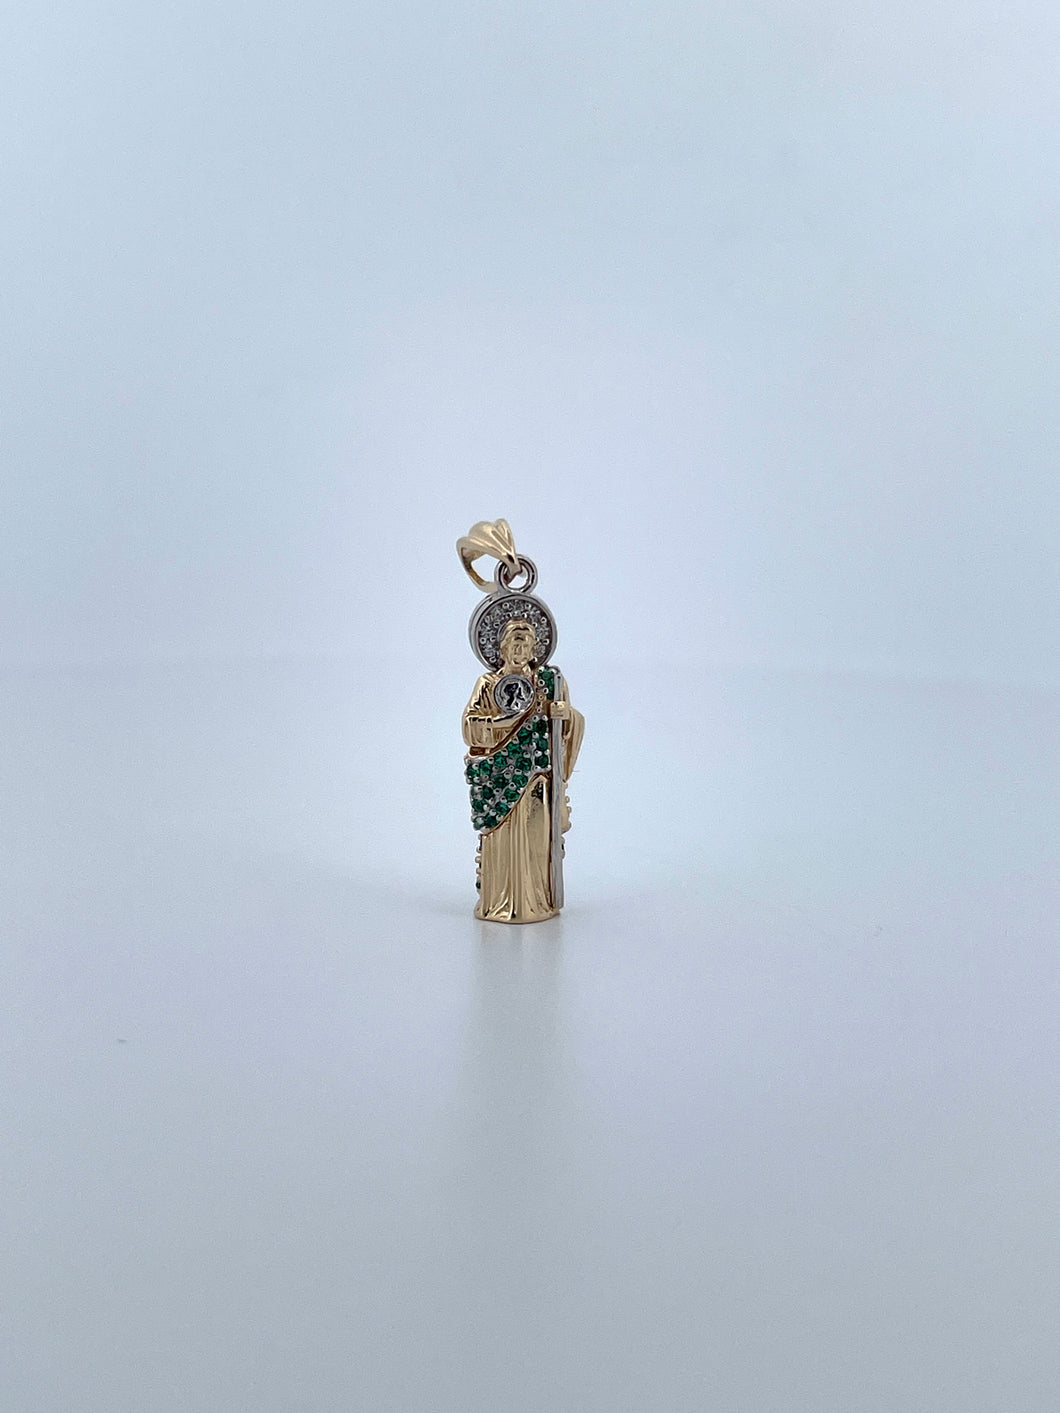 3D Micro San Judas Pendant-Green